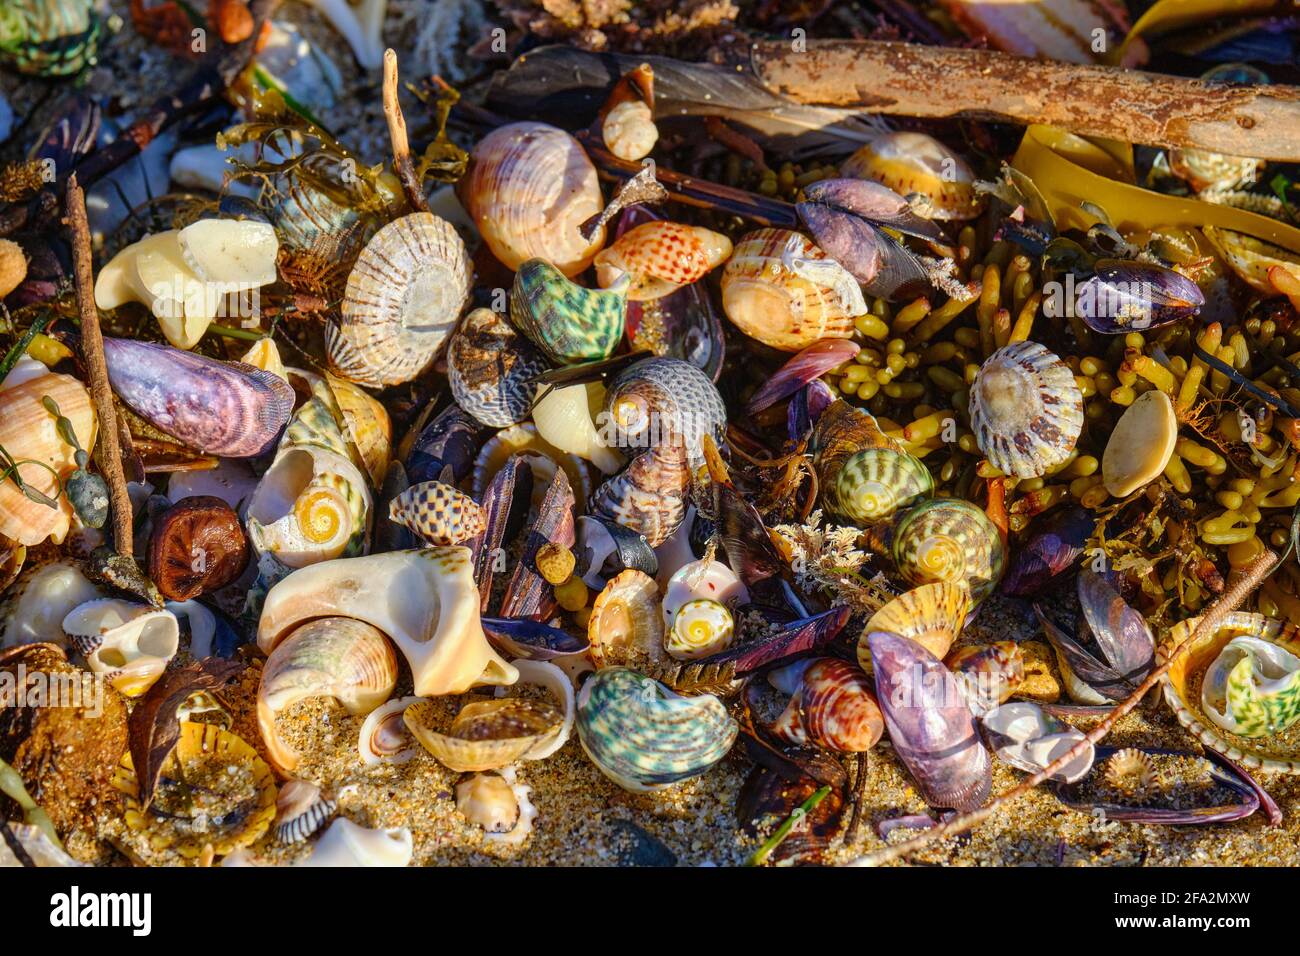 Muschelschalen An Der Meeresküste Stockfoto